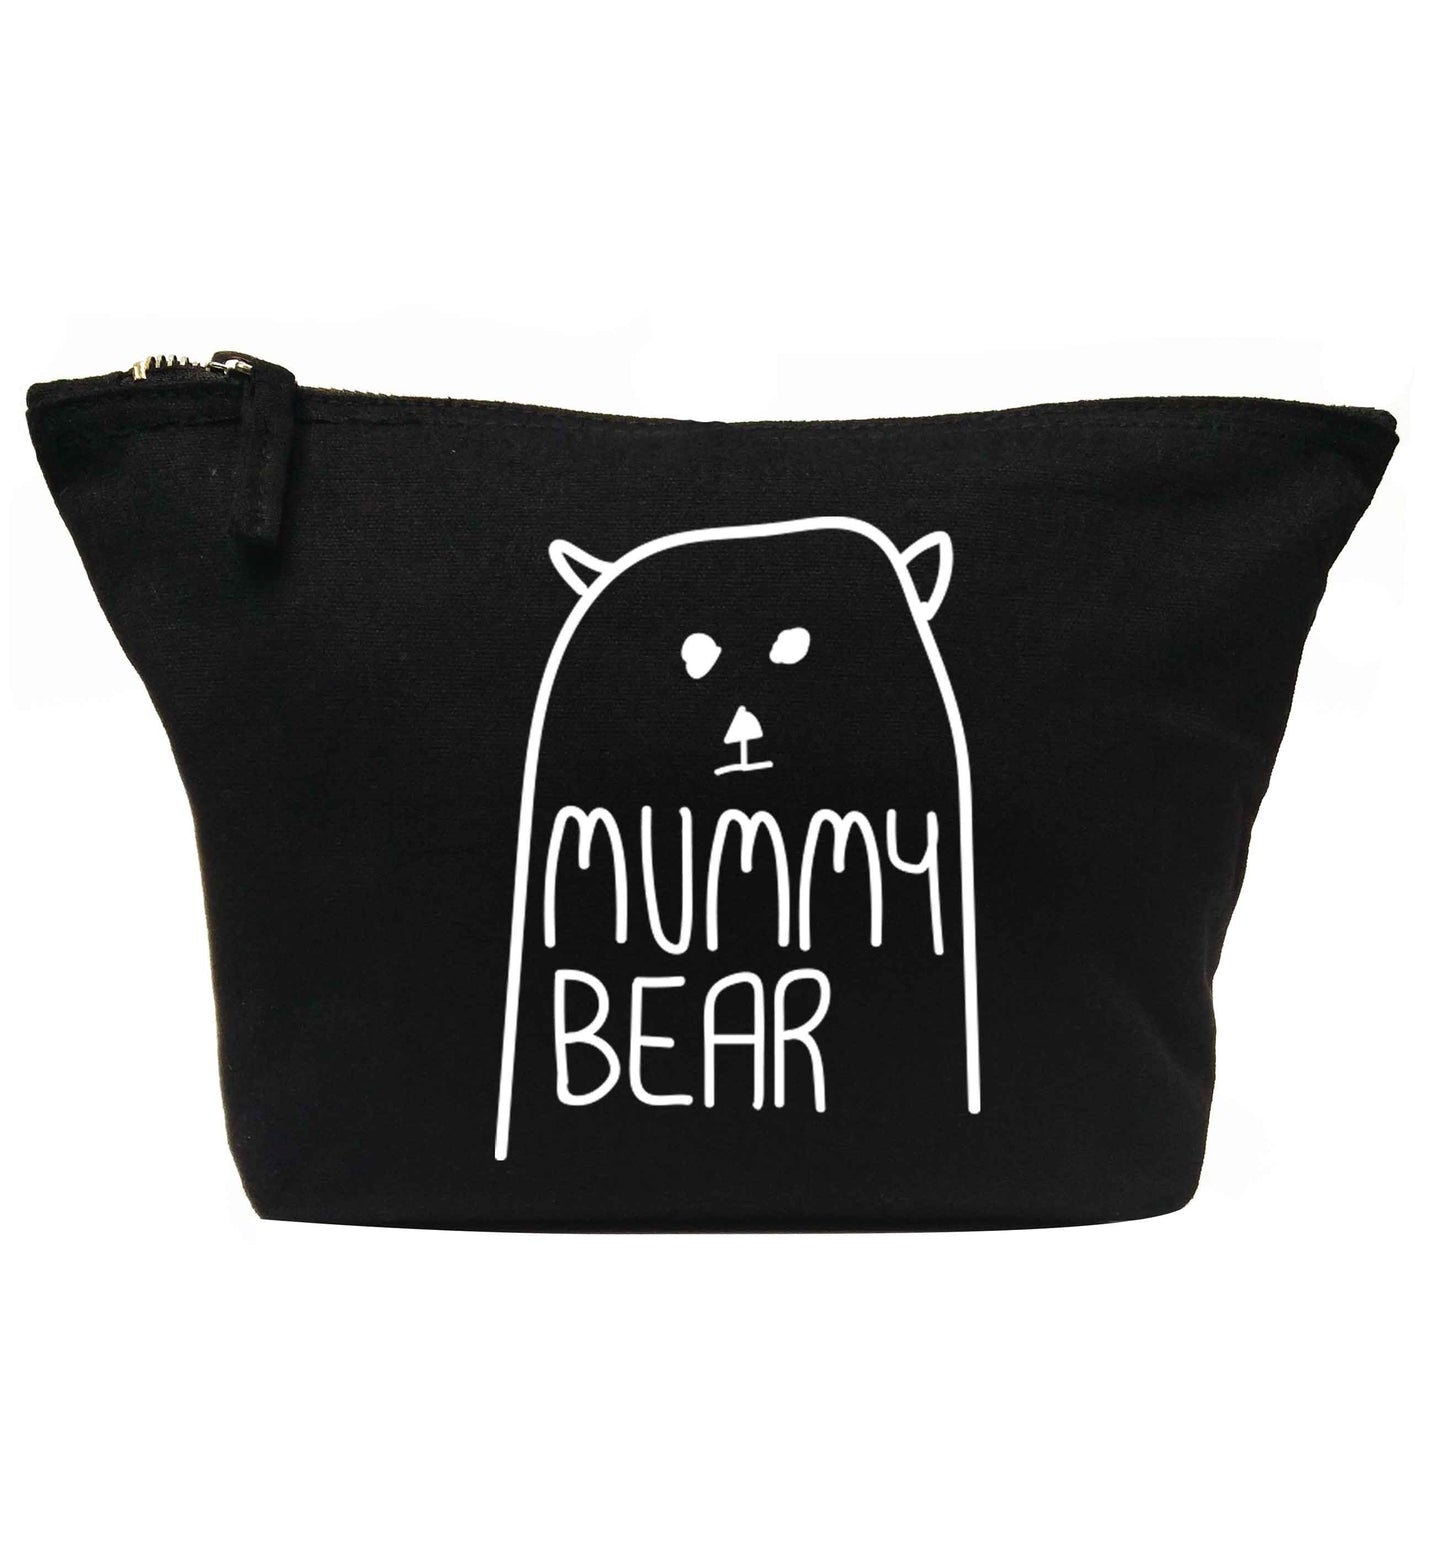 Mummy bear | Makeup / wash bag